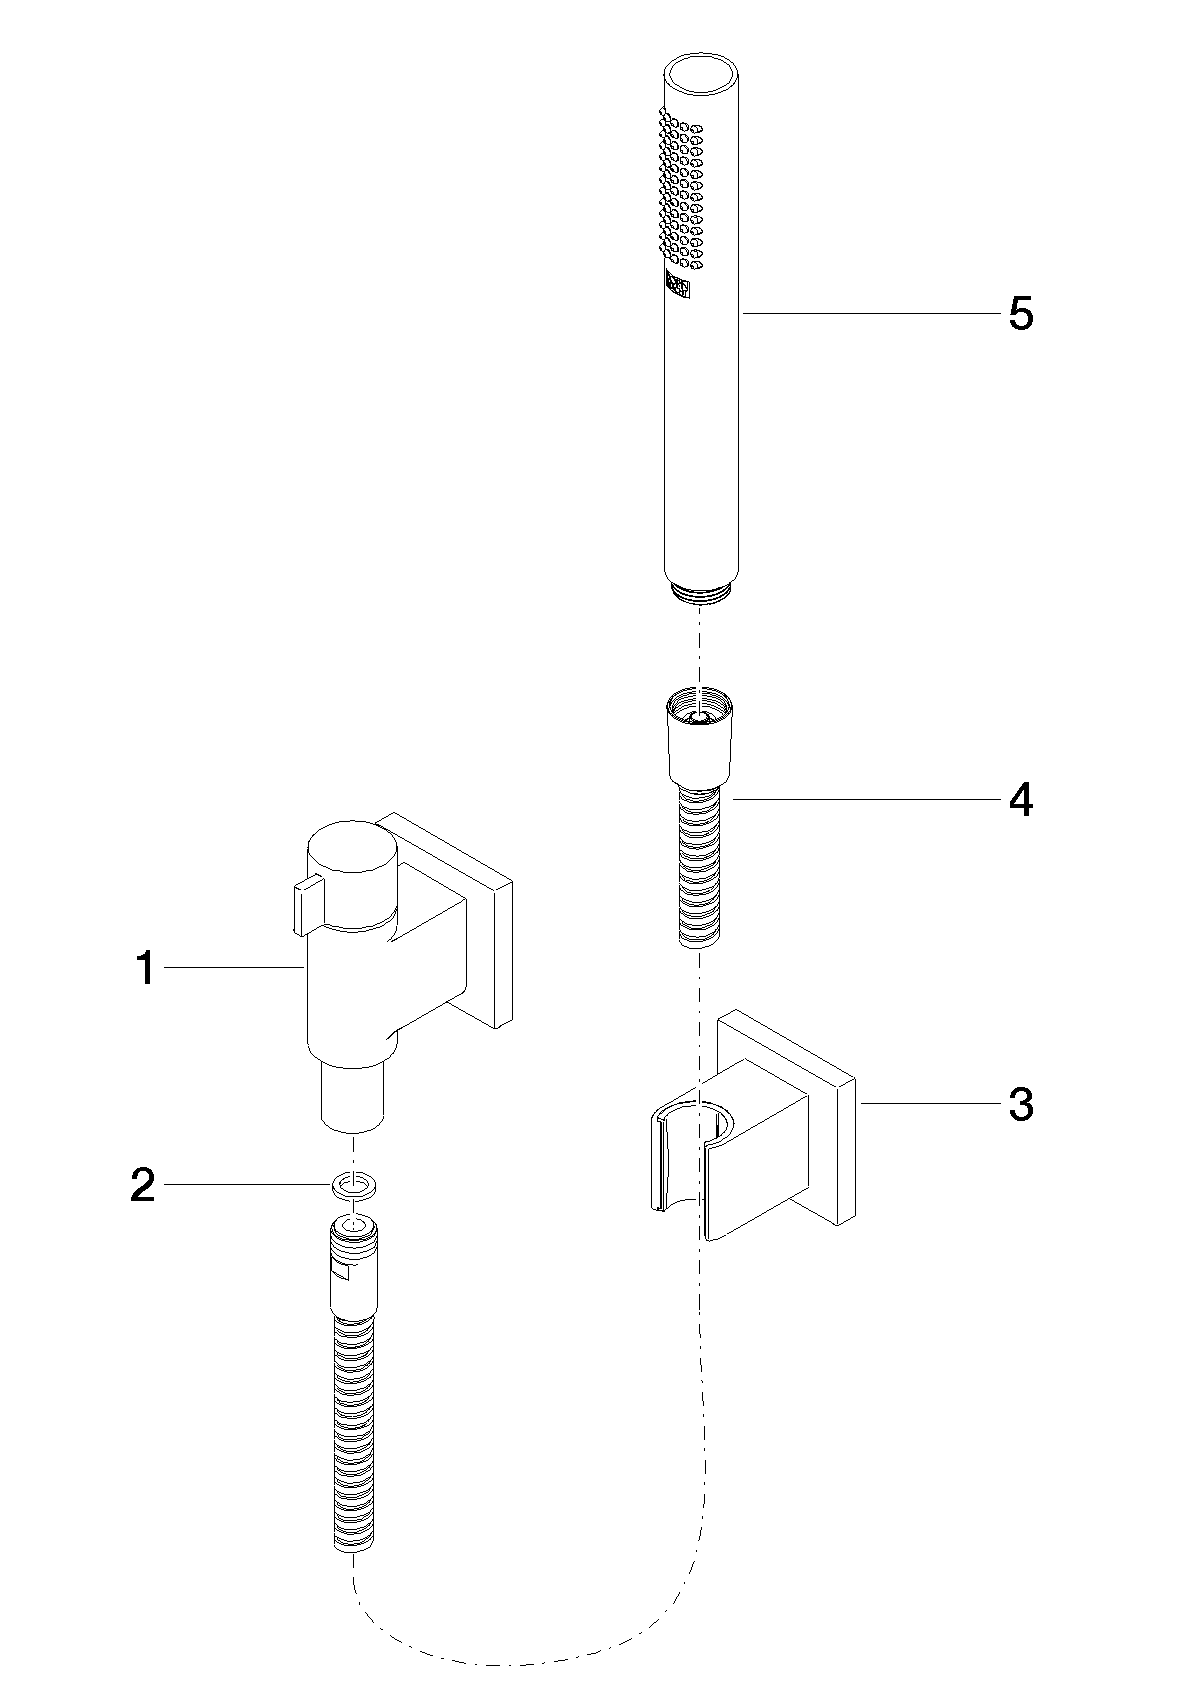 Bild von DORNBRACHT Schlauchbrausegarnitur mit Einzelrosetten mit Mengenregulierung - Chrom #27809985-00